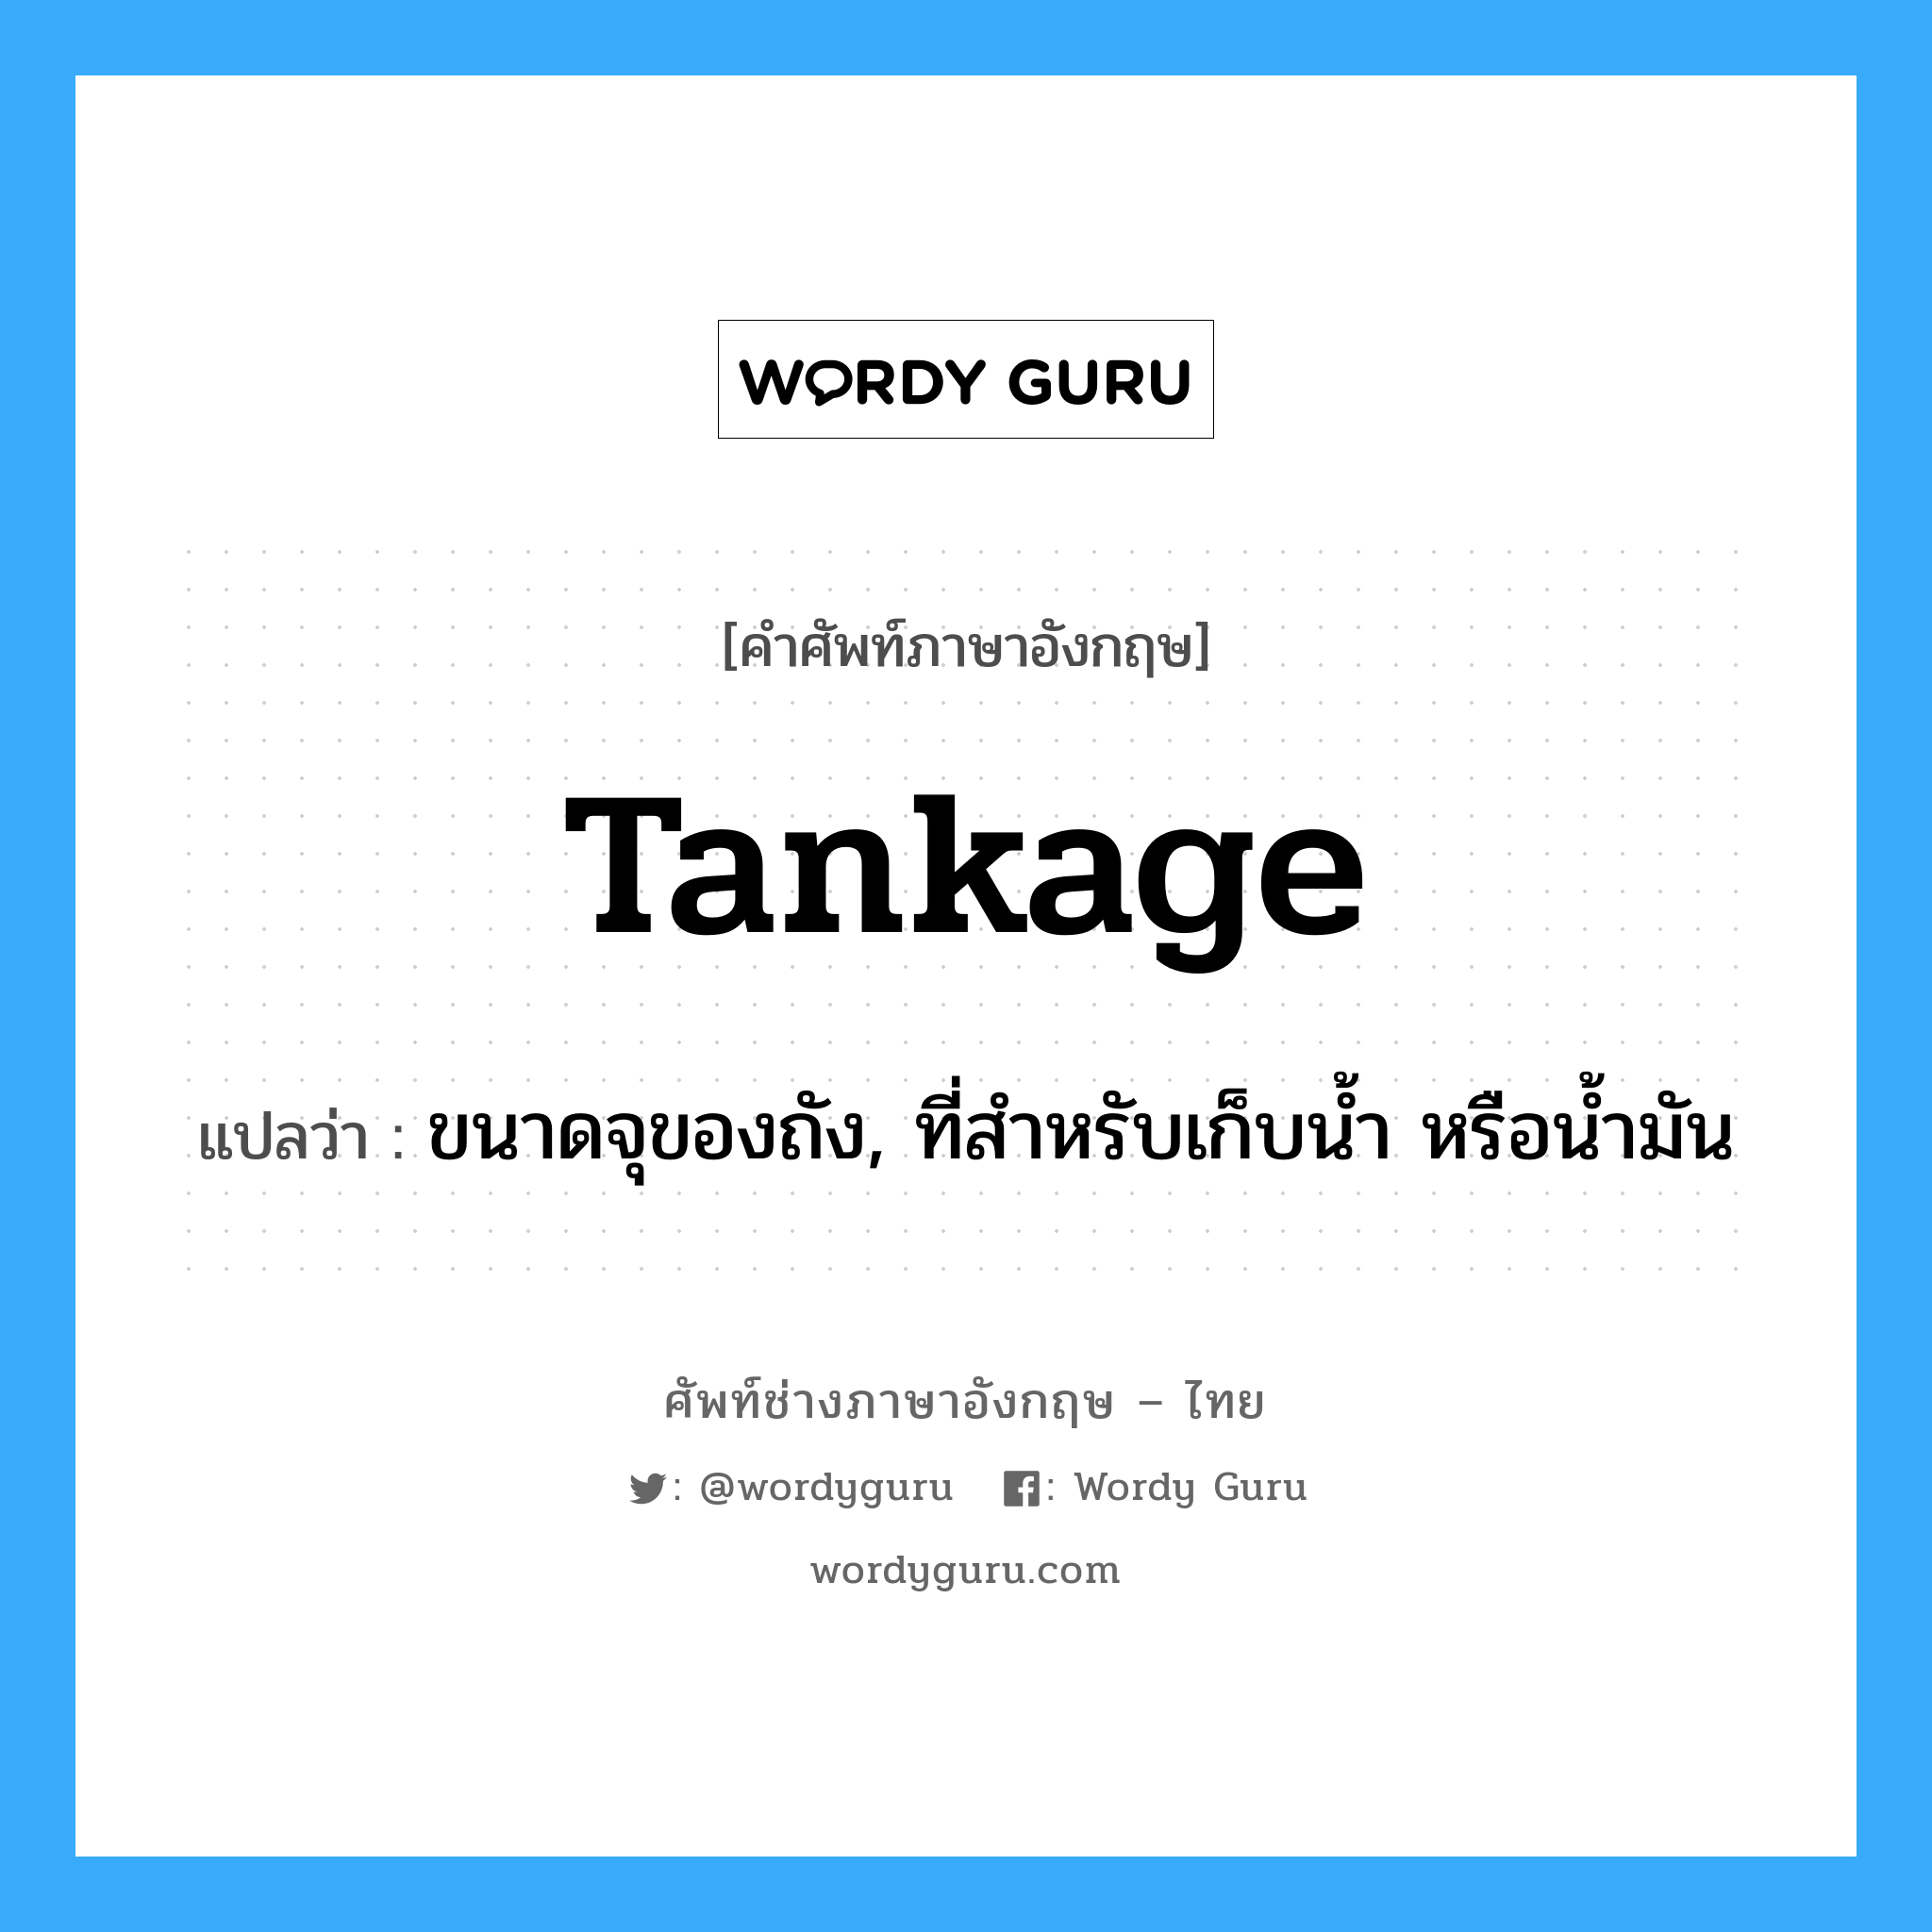 tankage แปลว่า?, คำศัพท์ช่างภาษาอังกฤษ - ไทย tankage คำศัพท์ภาษาอังกฤษ tankage แปลว่า ขนาดจุของถัง, ที่สำหรับเก็บน้ำ หรือน้ำมัน